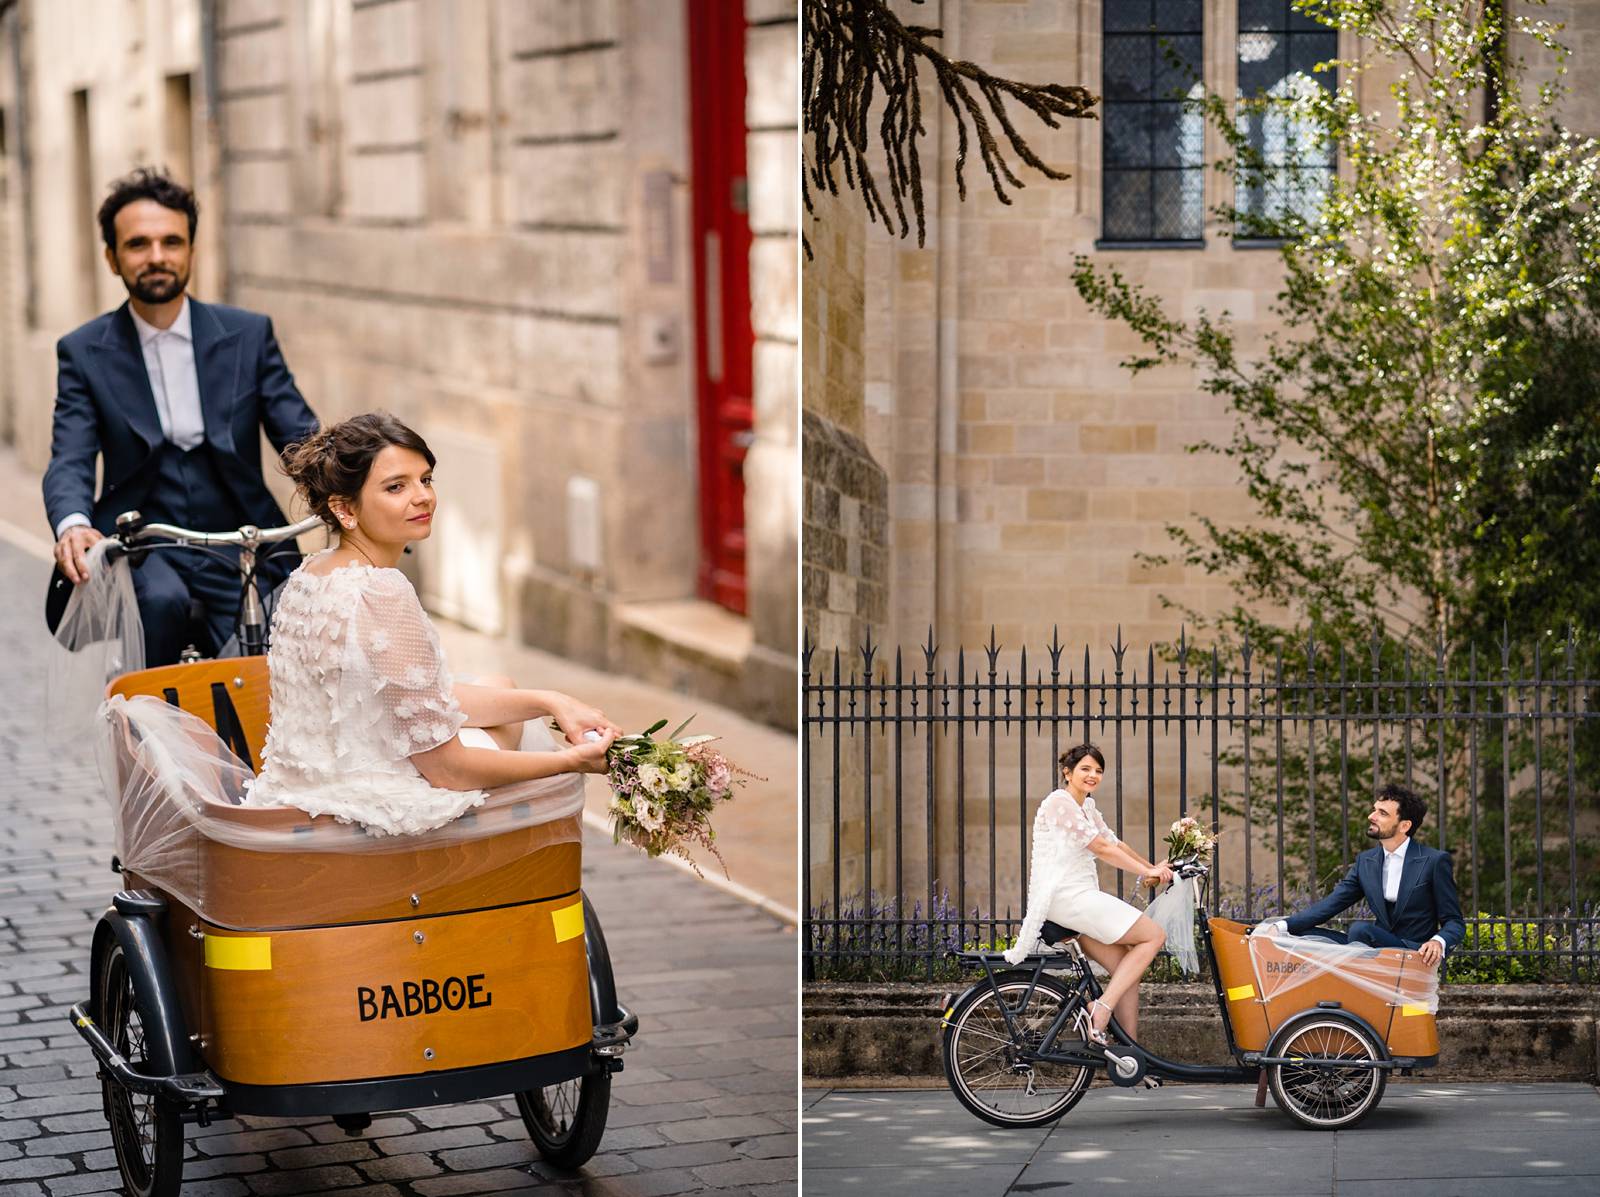 Le mariage civil à vélo original et décalé, à Bordeaux centre et en Charentes sous une tente sketch, de Pierre et Isabelle. Photographe mariage Charentes.